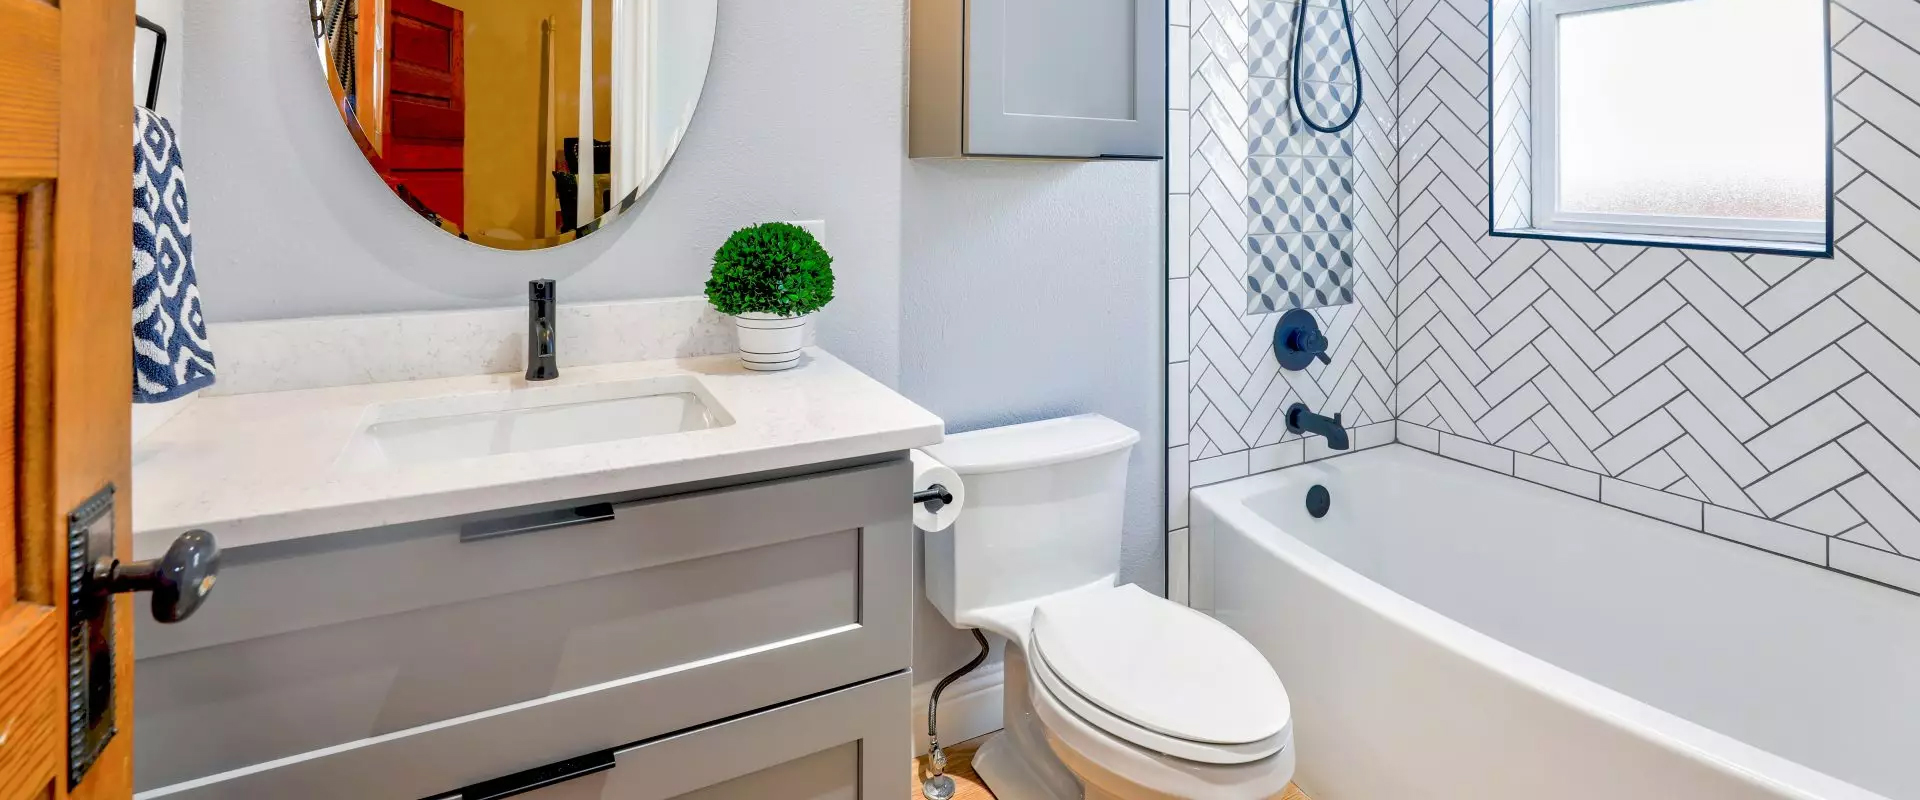 Get Premium Bathroom Design from Professional Interior Designers